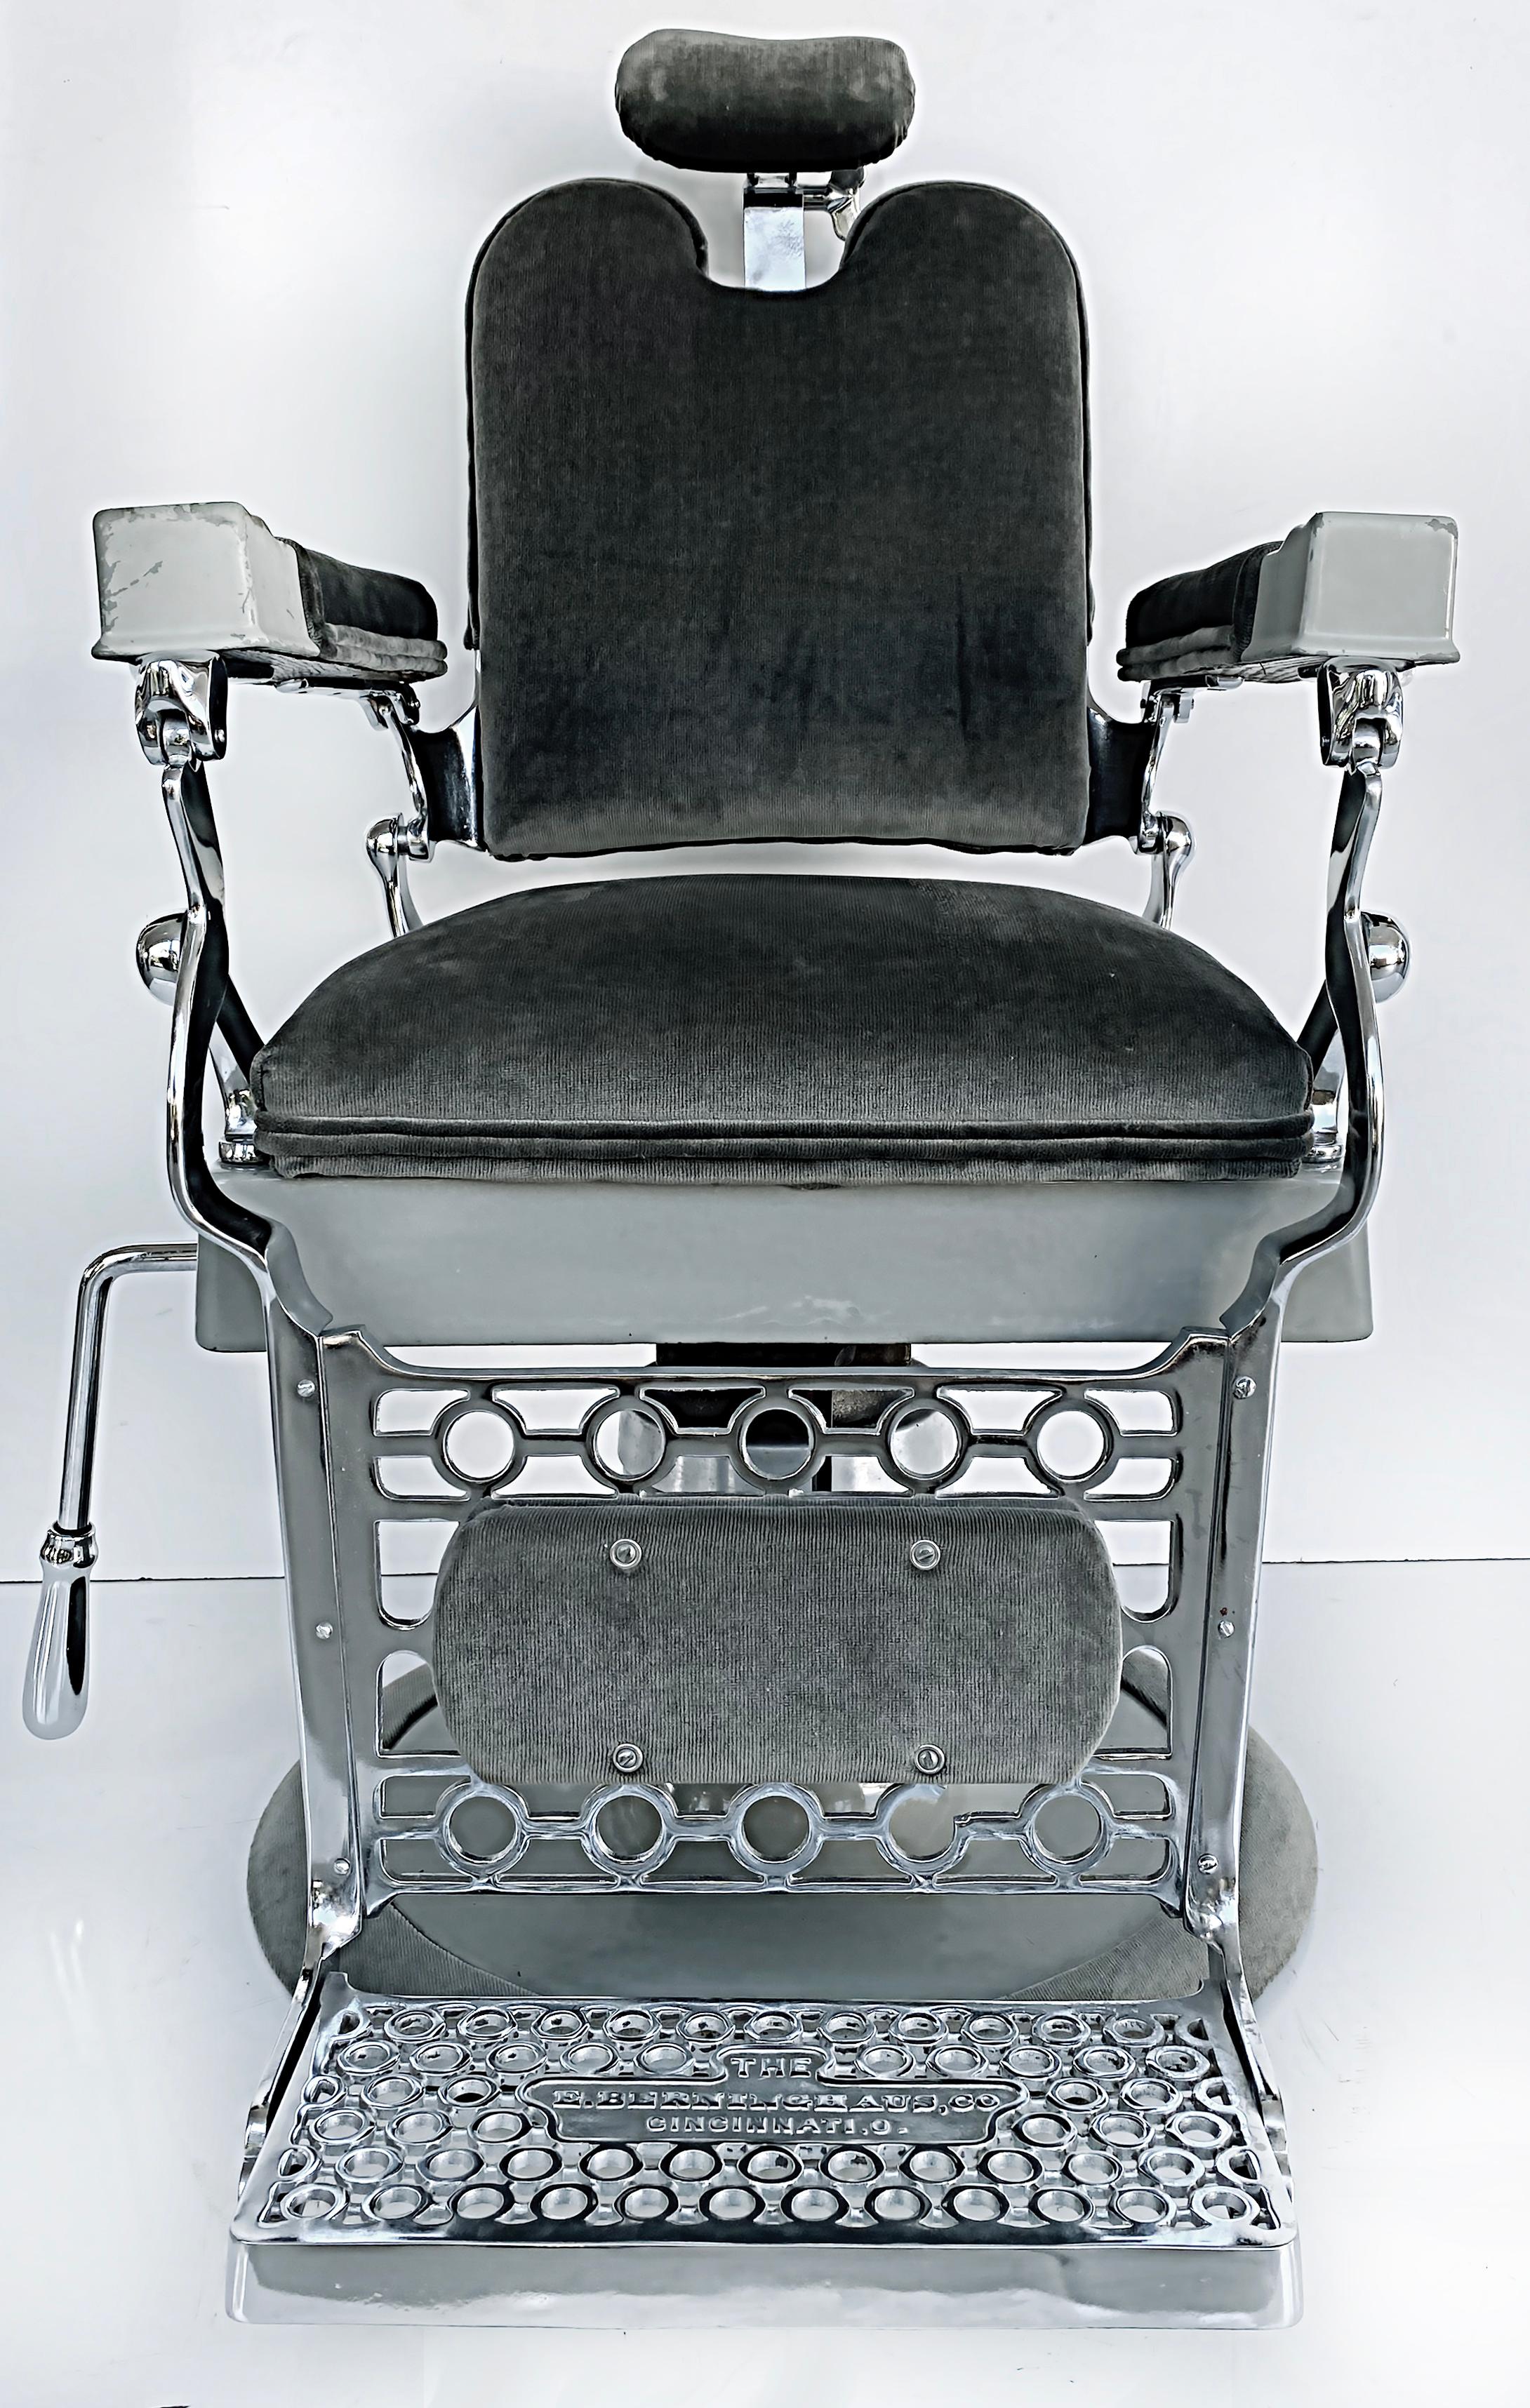 Fauteuil de barbier américain ancien d'Eugene Berninghaus Co.

Nous proposons à la vente un fauteuil de barbier ancien du début du 20e siècle fabriqué par la société Eugene Berninghaus Co. Considérée comme le premier fabricant de fauteuils de